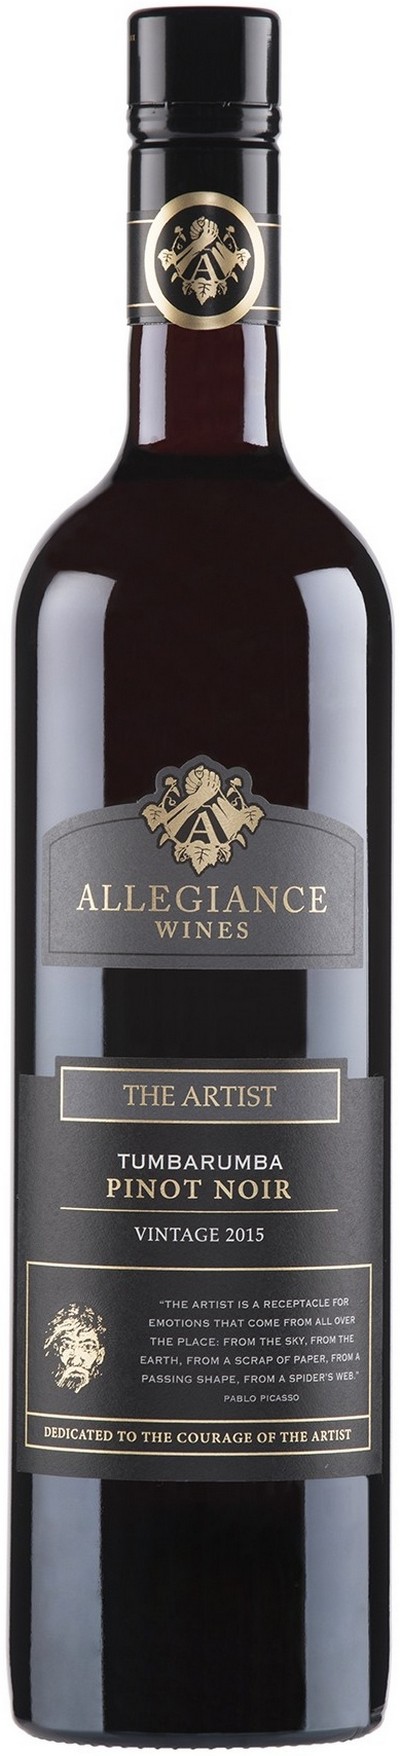 allegiance-wines-the-artist-tumbarumba-pinot-noir-2015